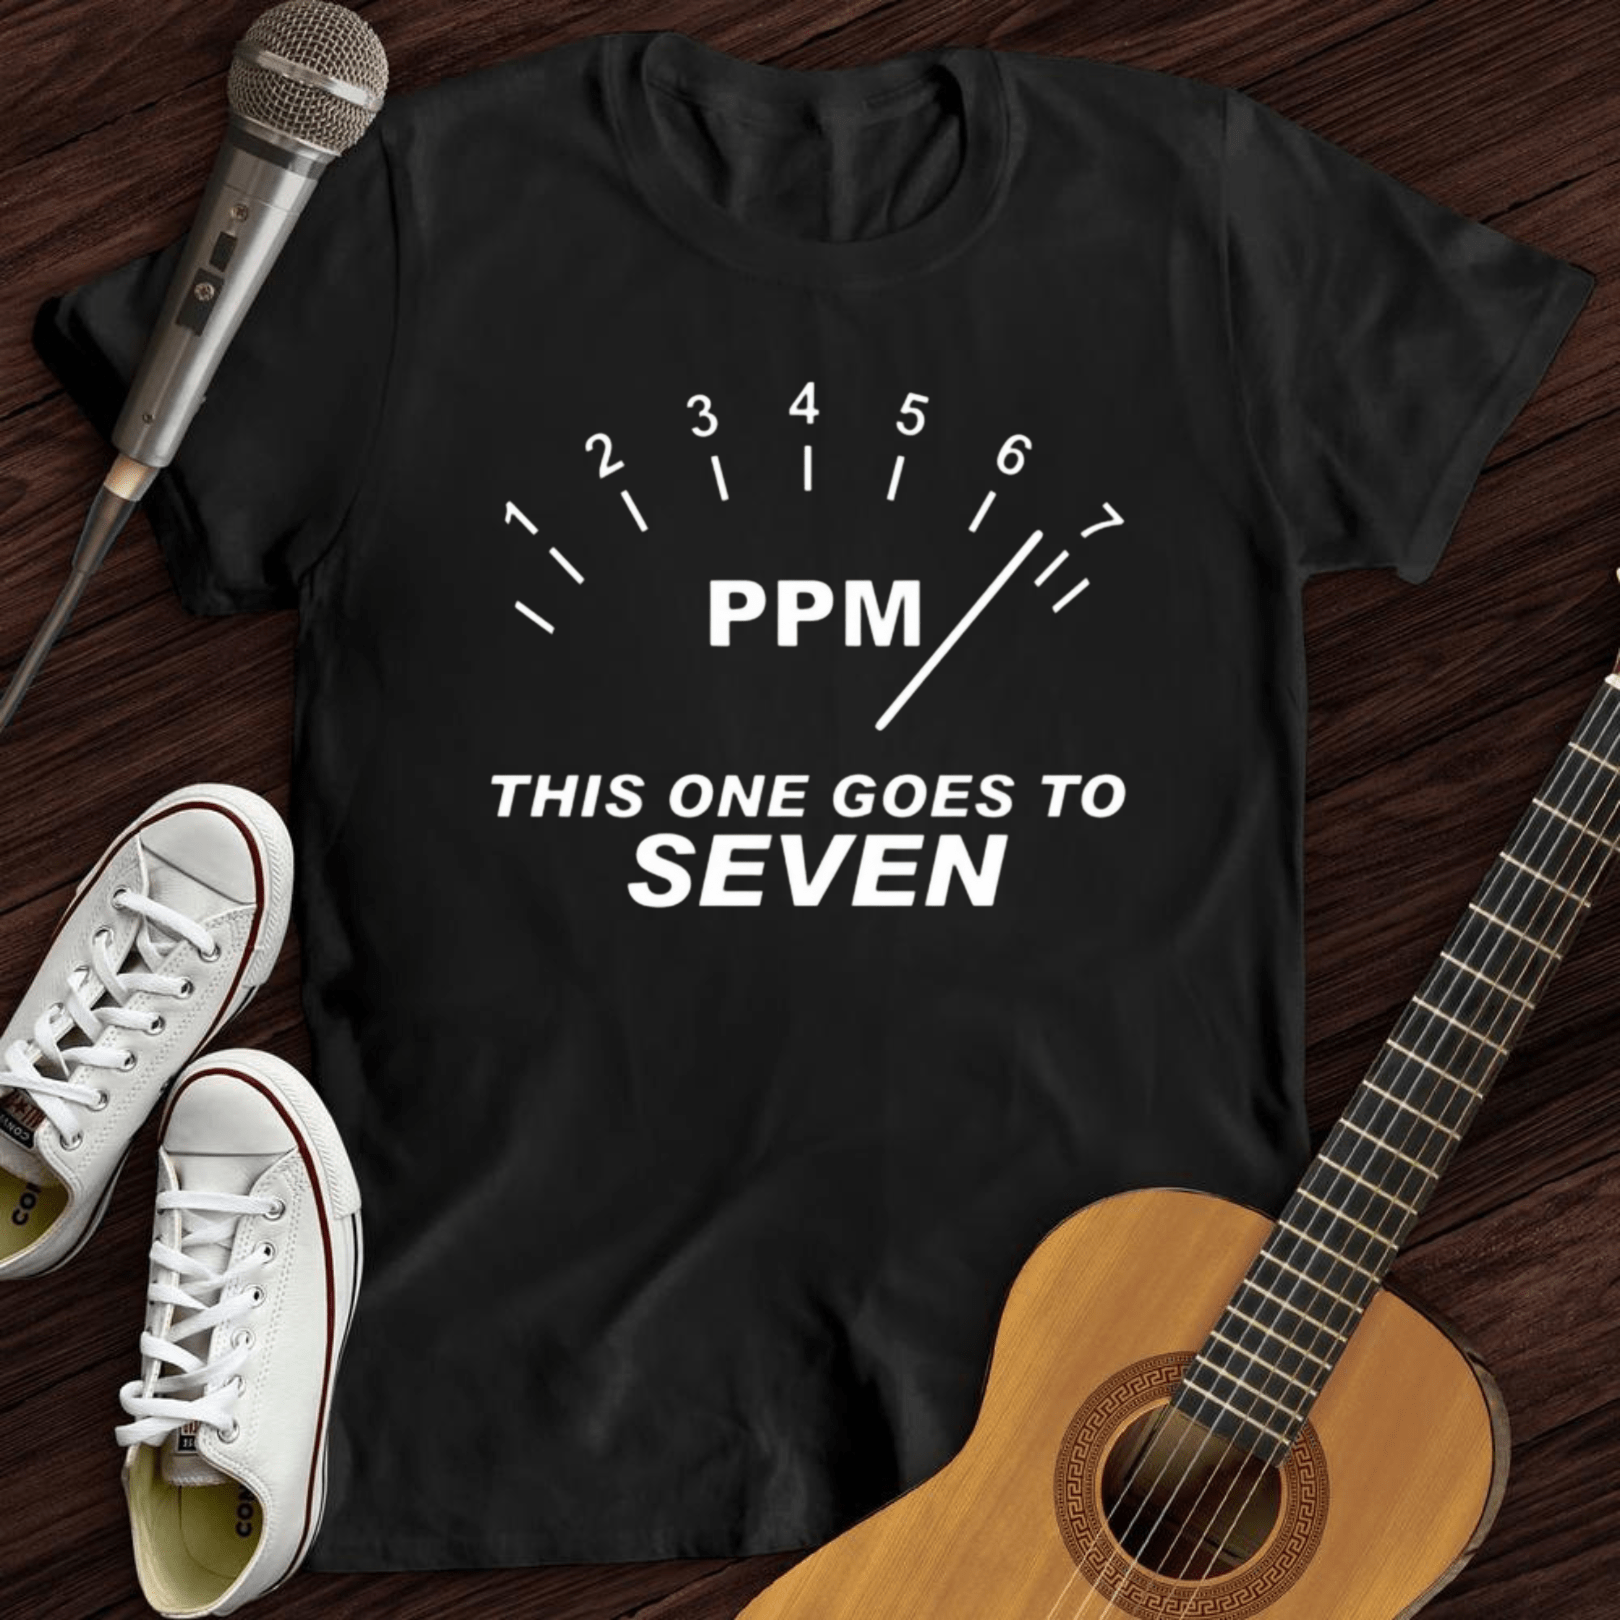 Printify T-Shirt S / Black PPM T-Shirt